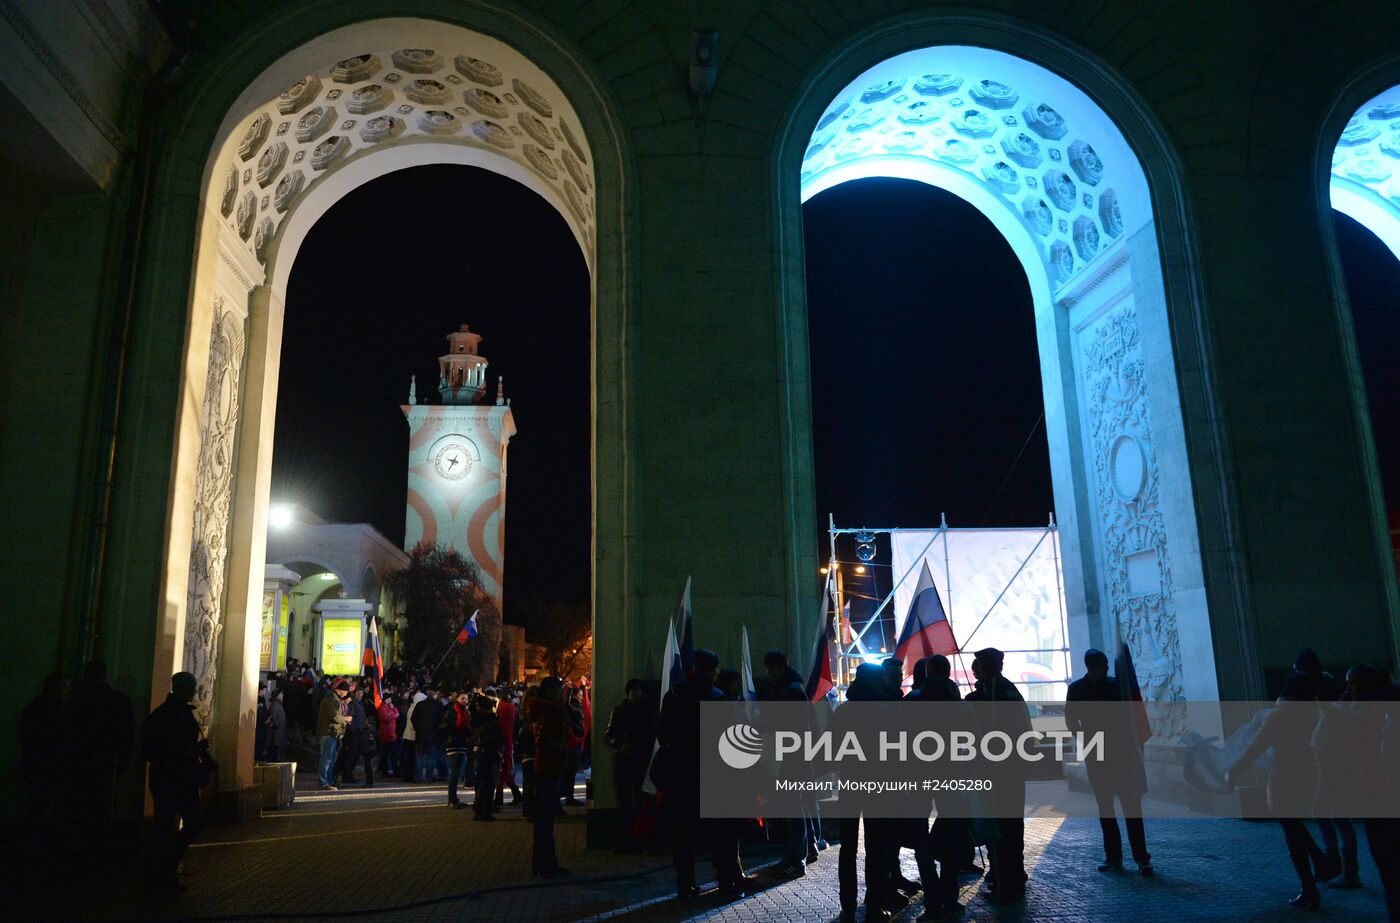 Перевод часов на московское время в Крыму